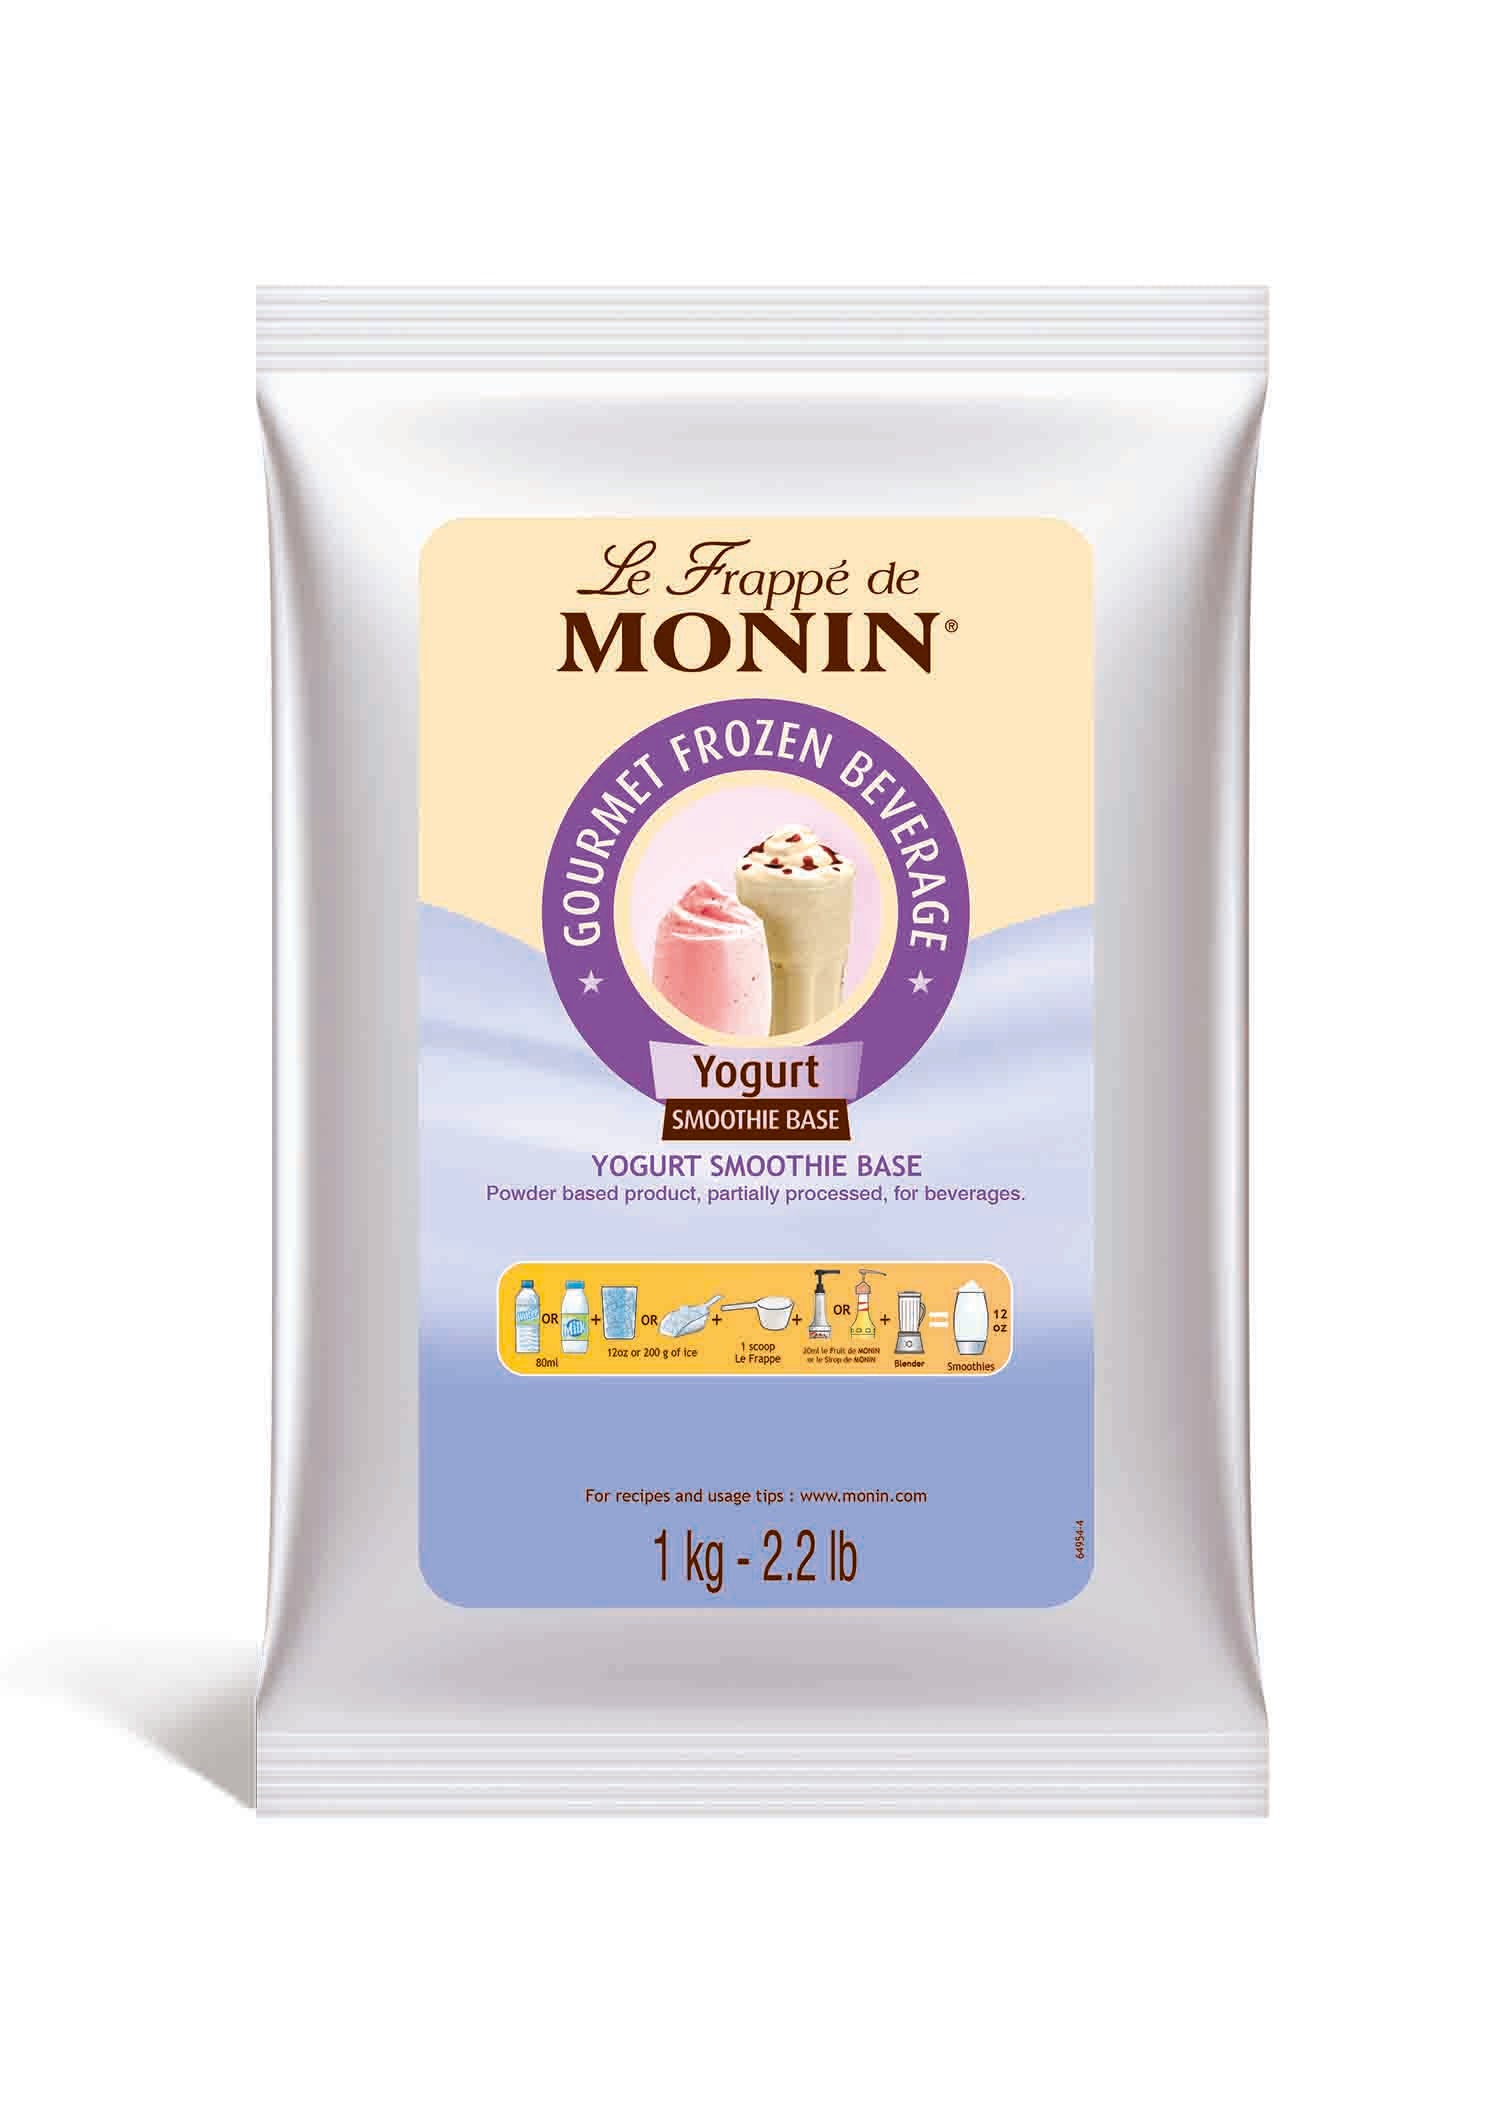 Le Frappé de MONIN Yogurt